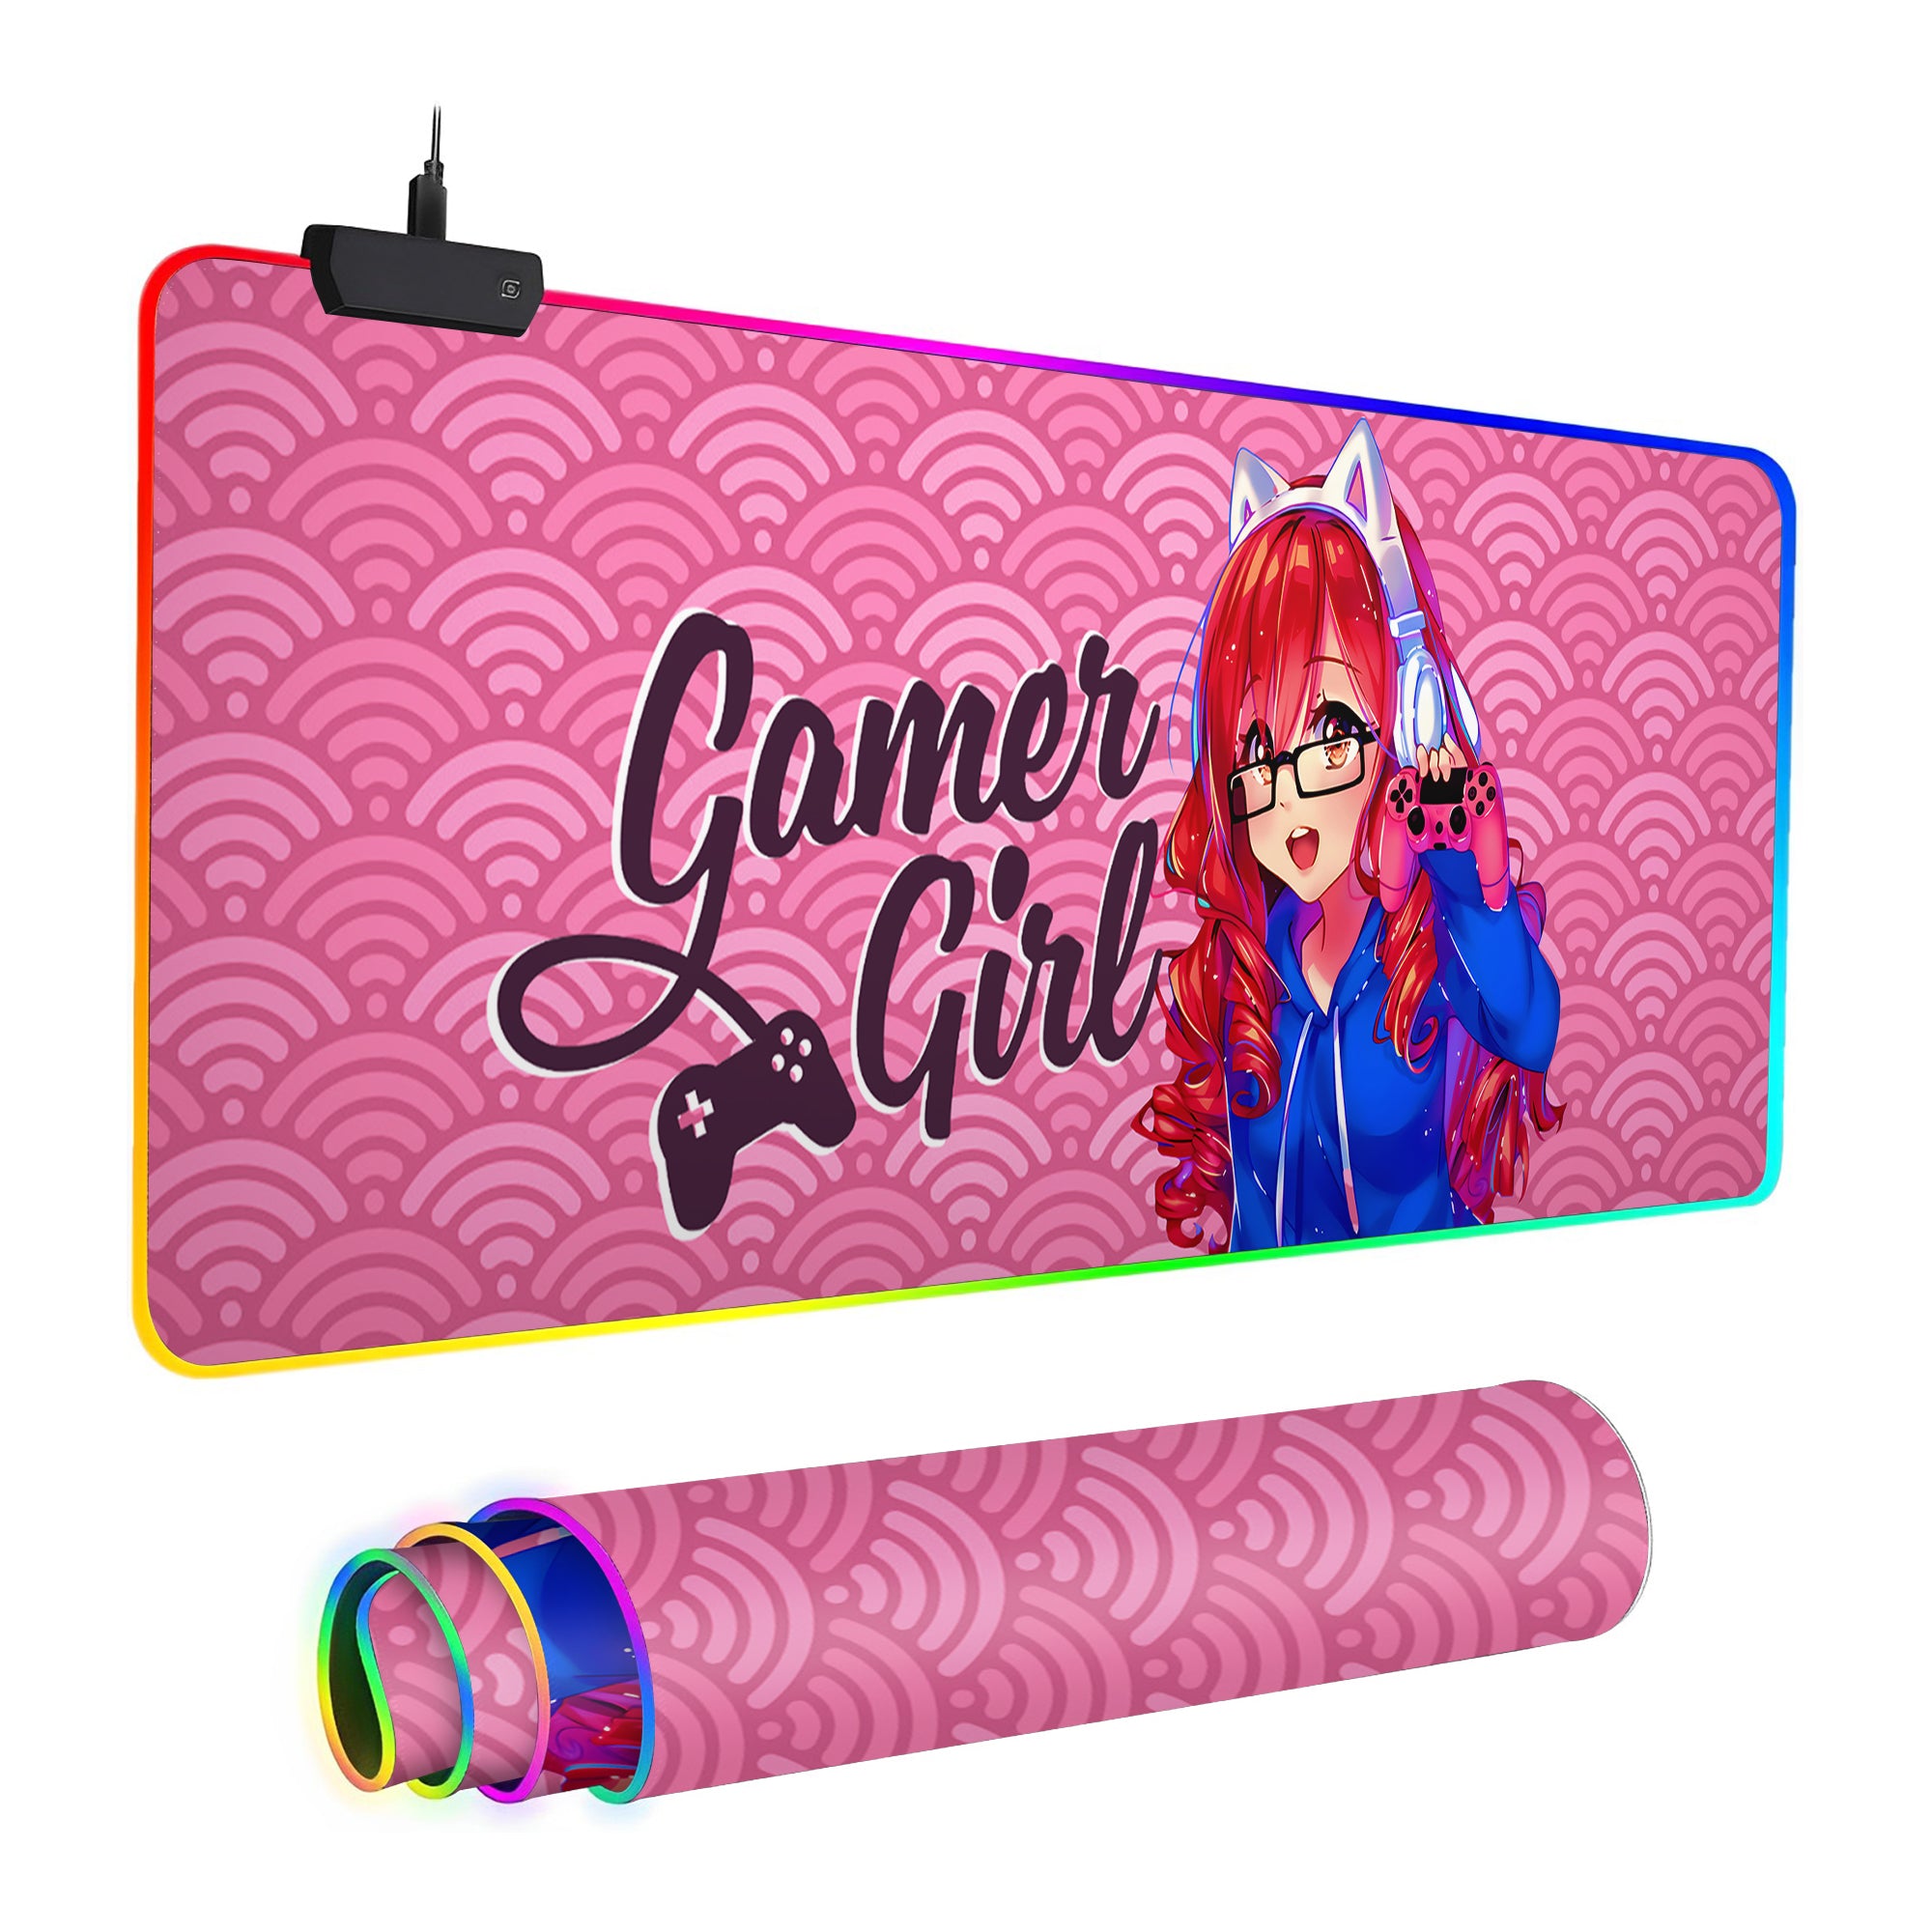 Gamer Girl inspired Custom Gaming Mouse Pad